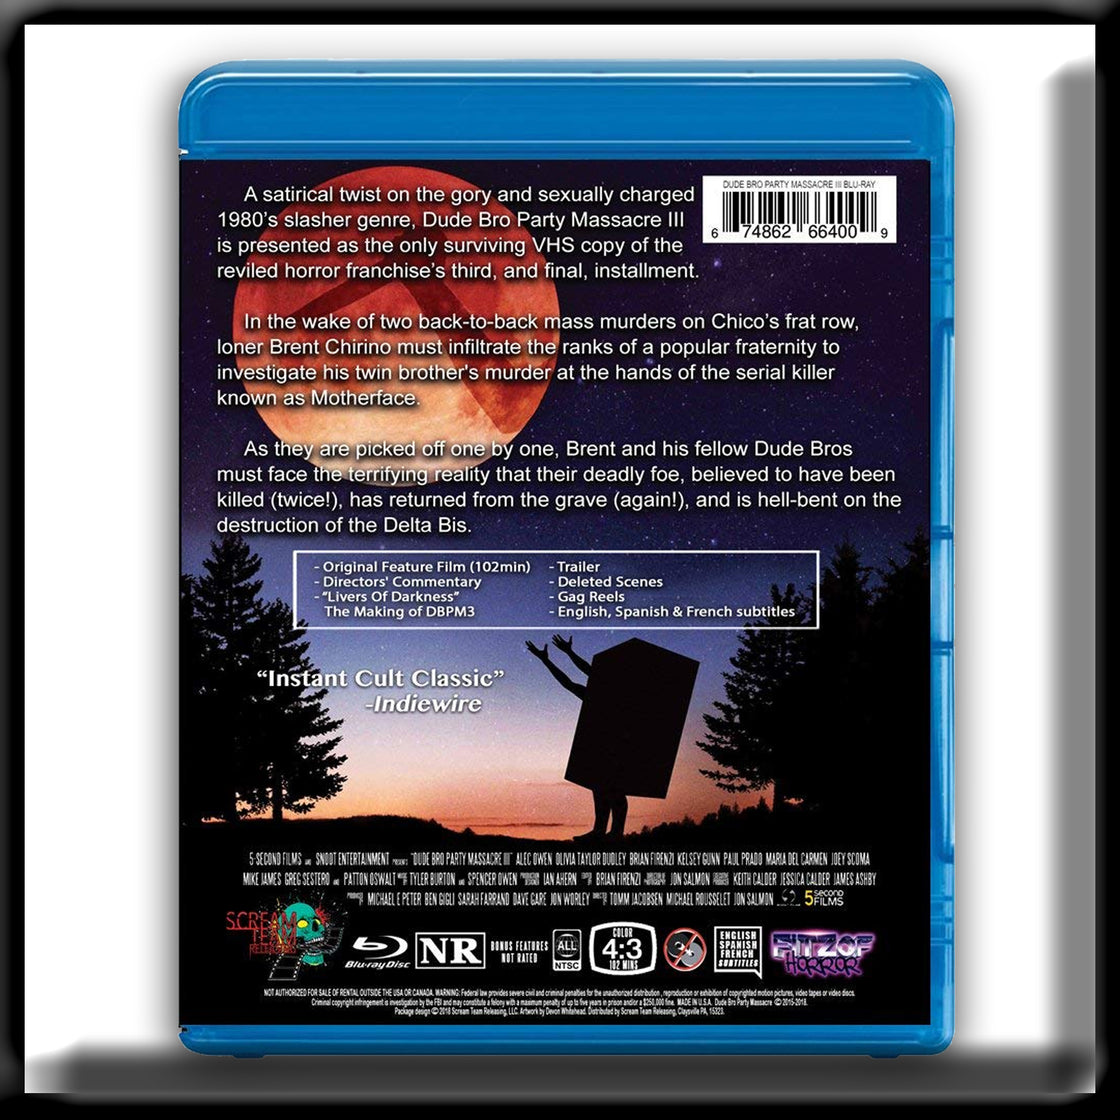 Dude Bro Party Massacre III - Special Collectors Edition (Blu-ray)